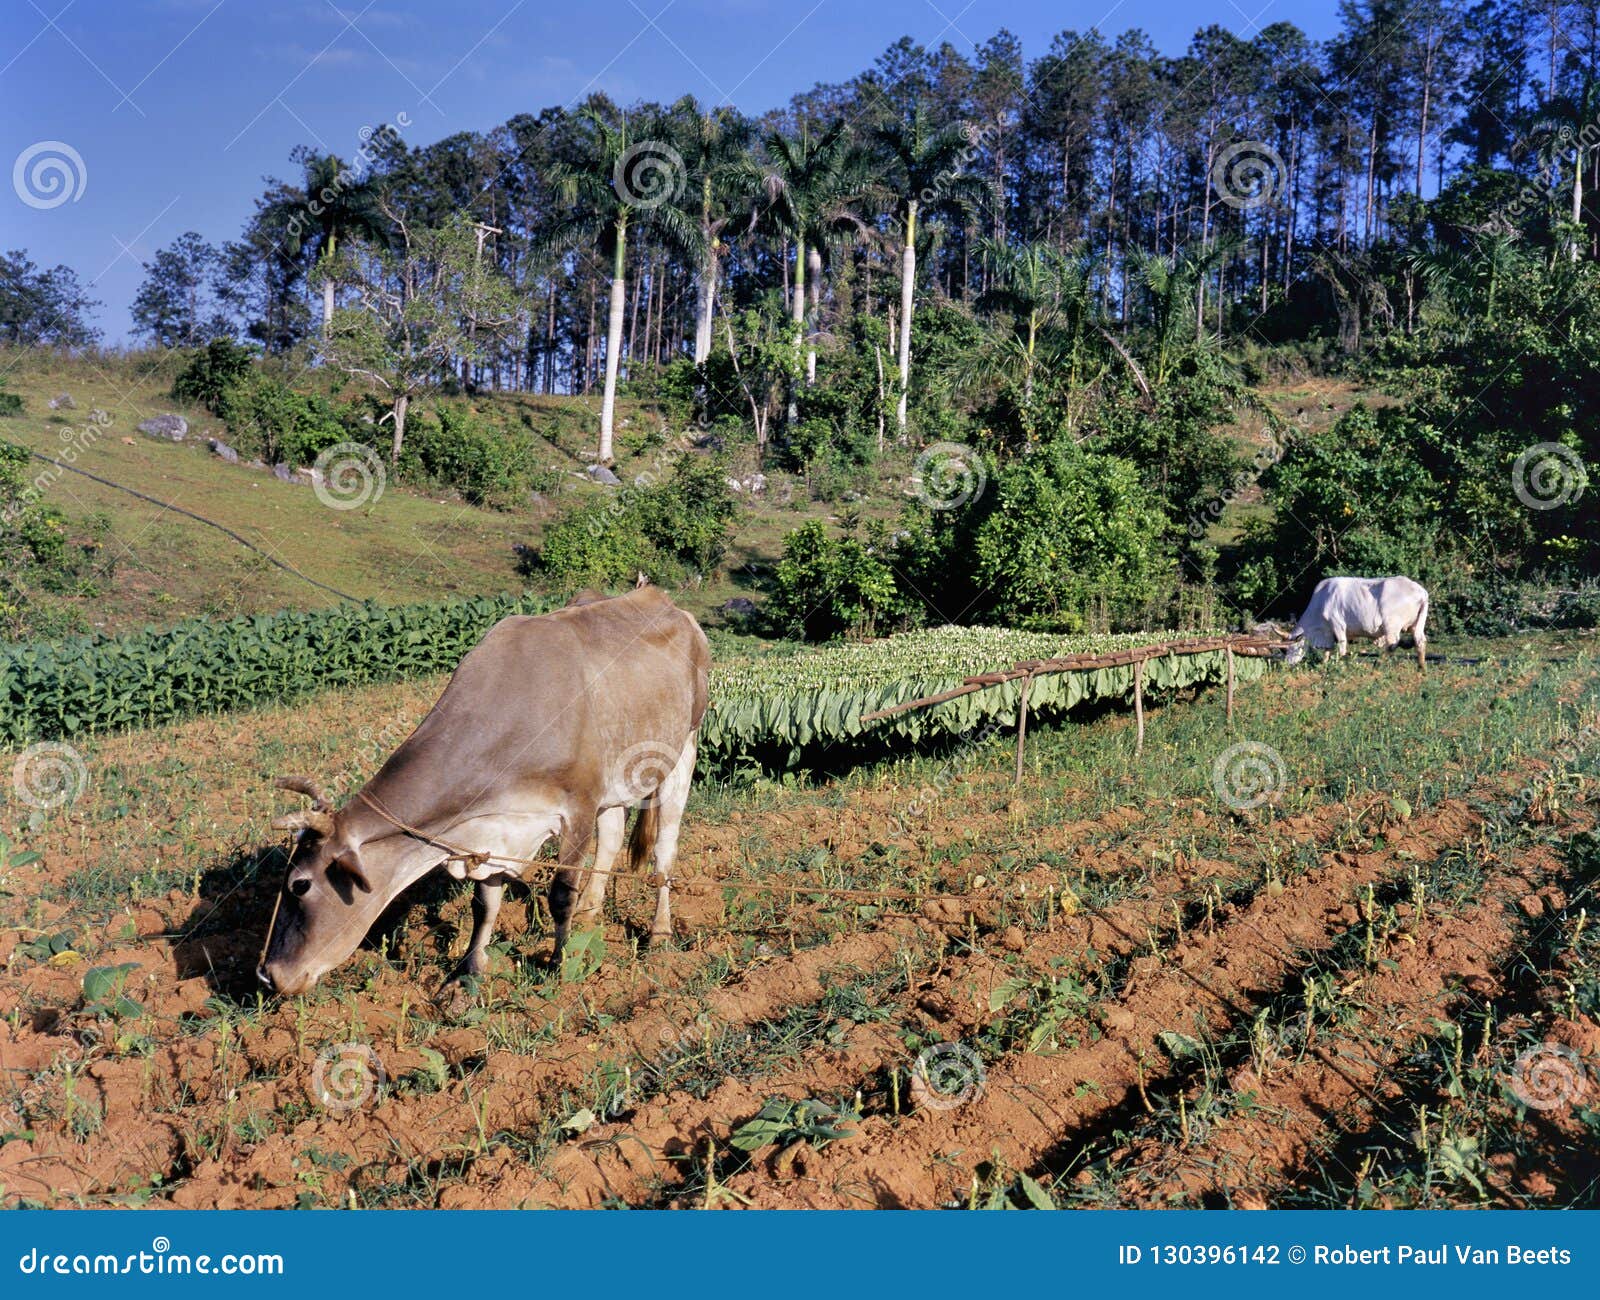 tobacco field, pinar del rio province, cuba